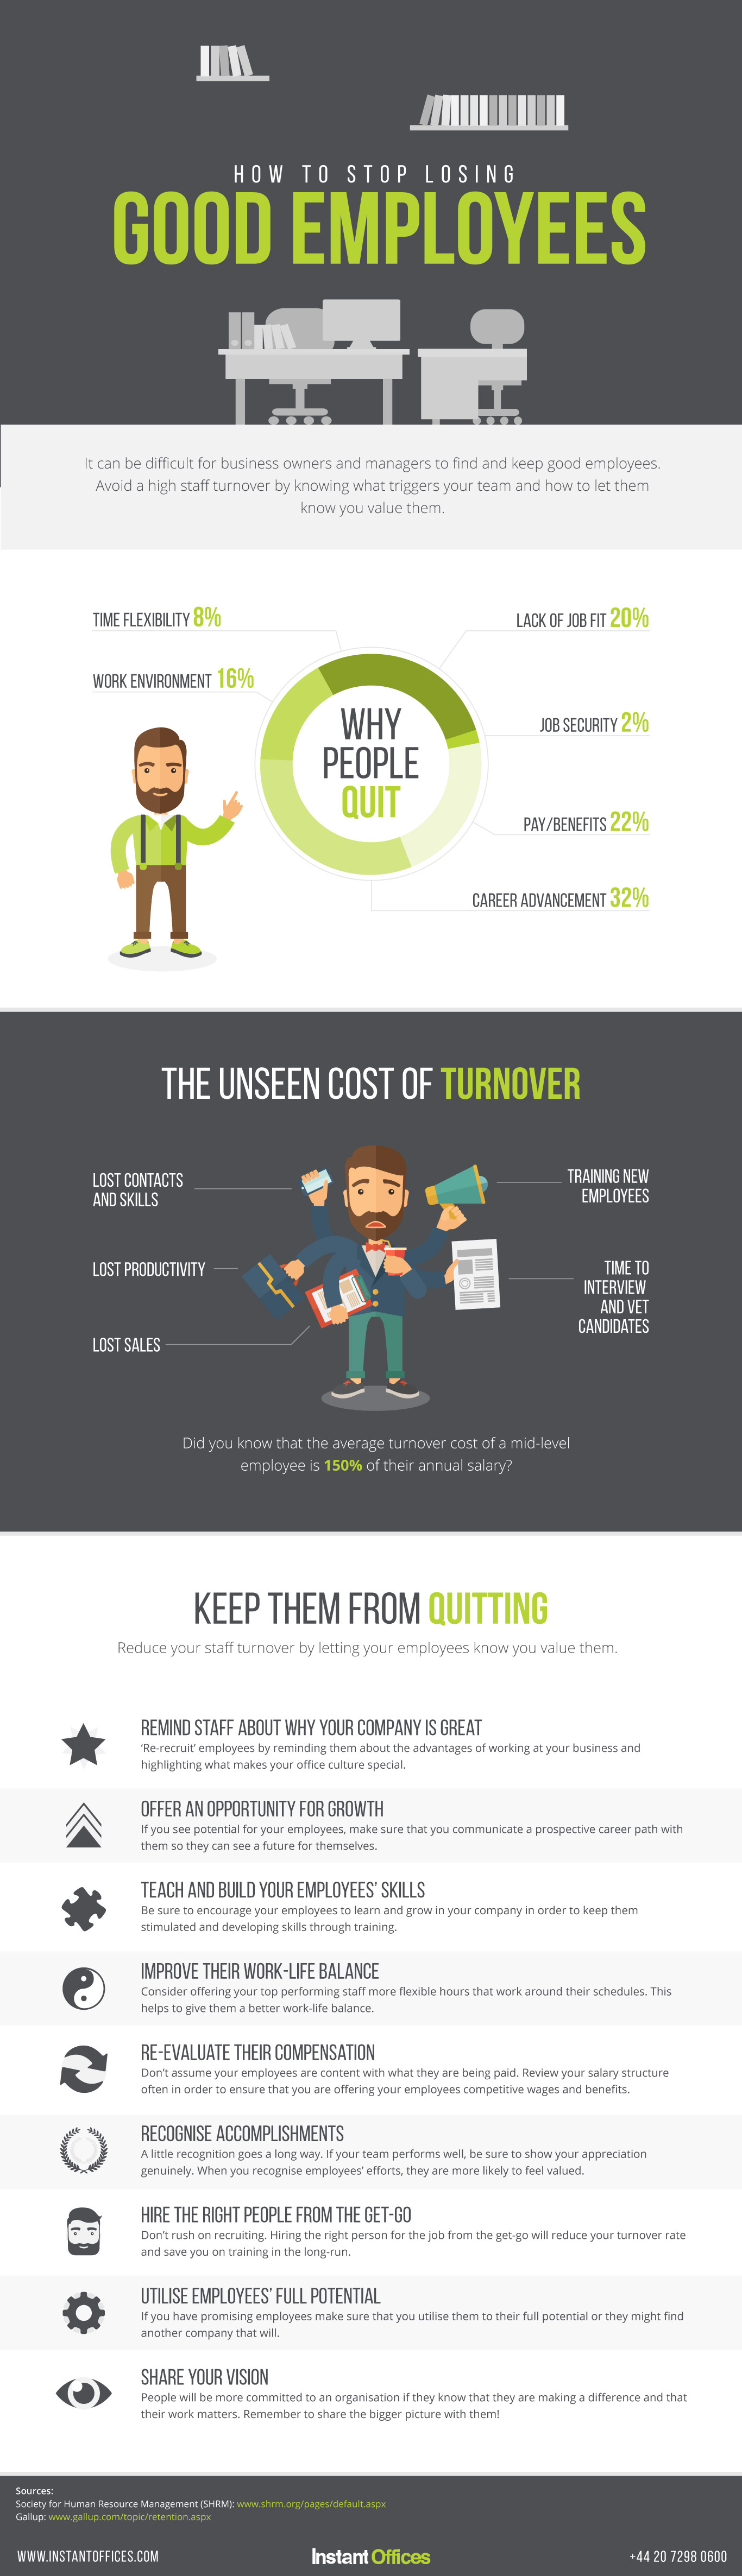 good-employeers-infographic